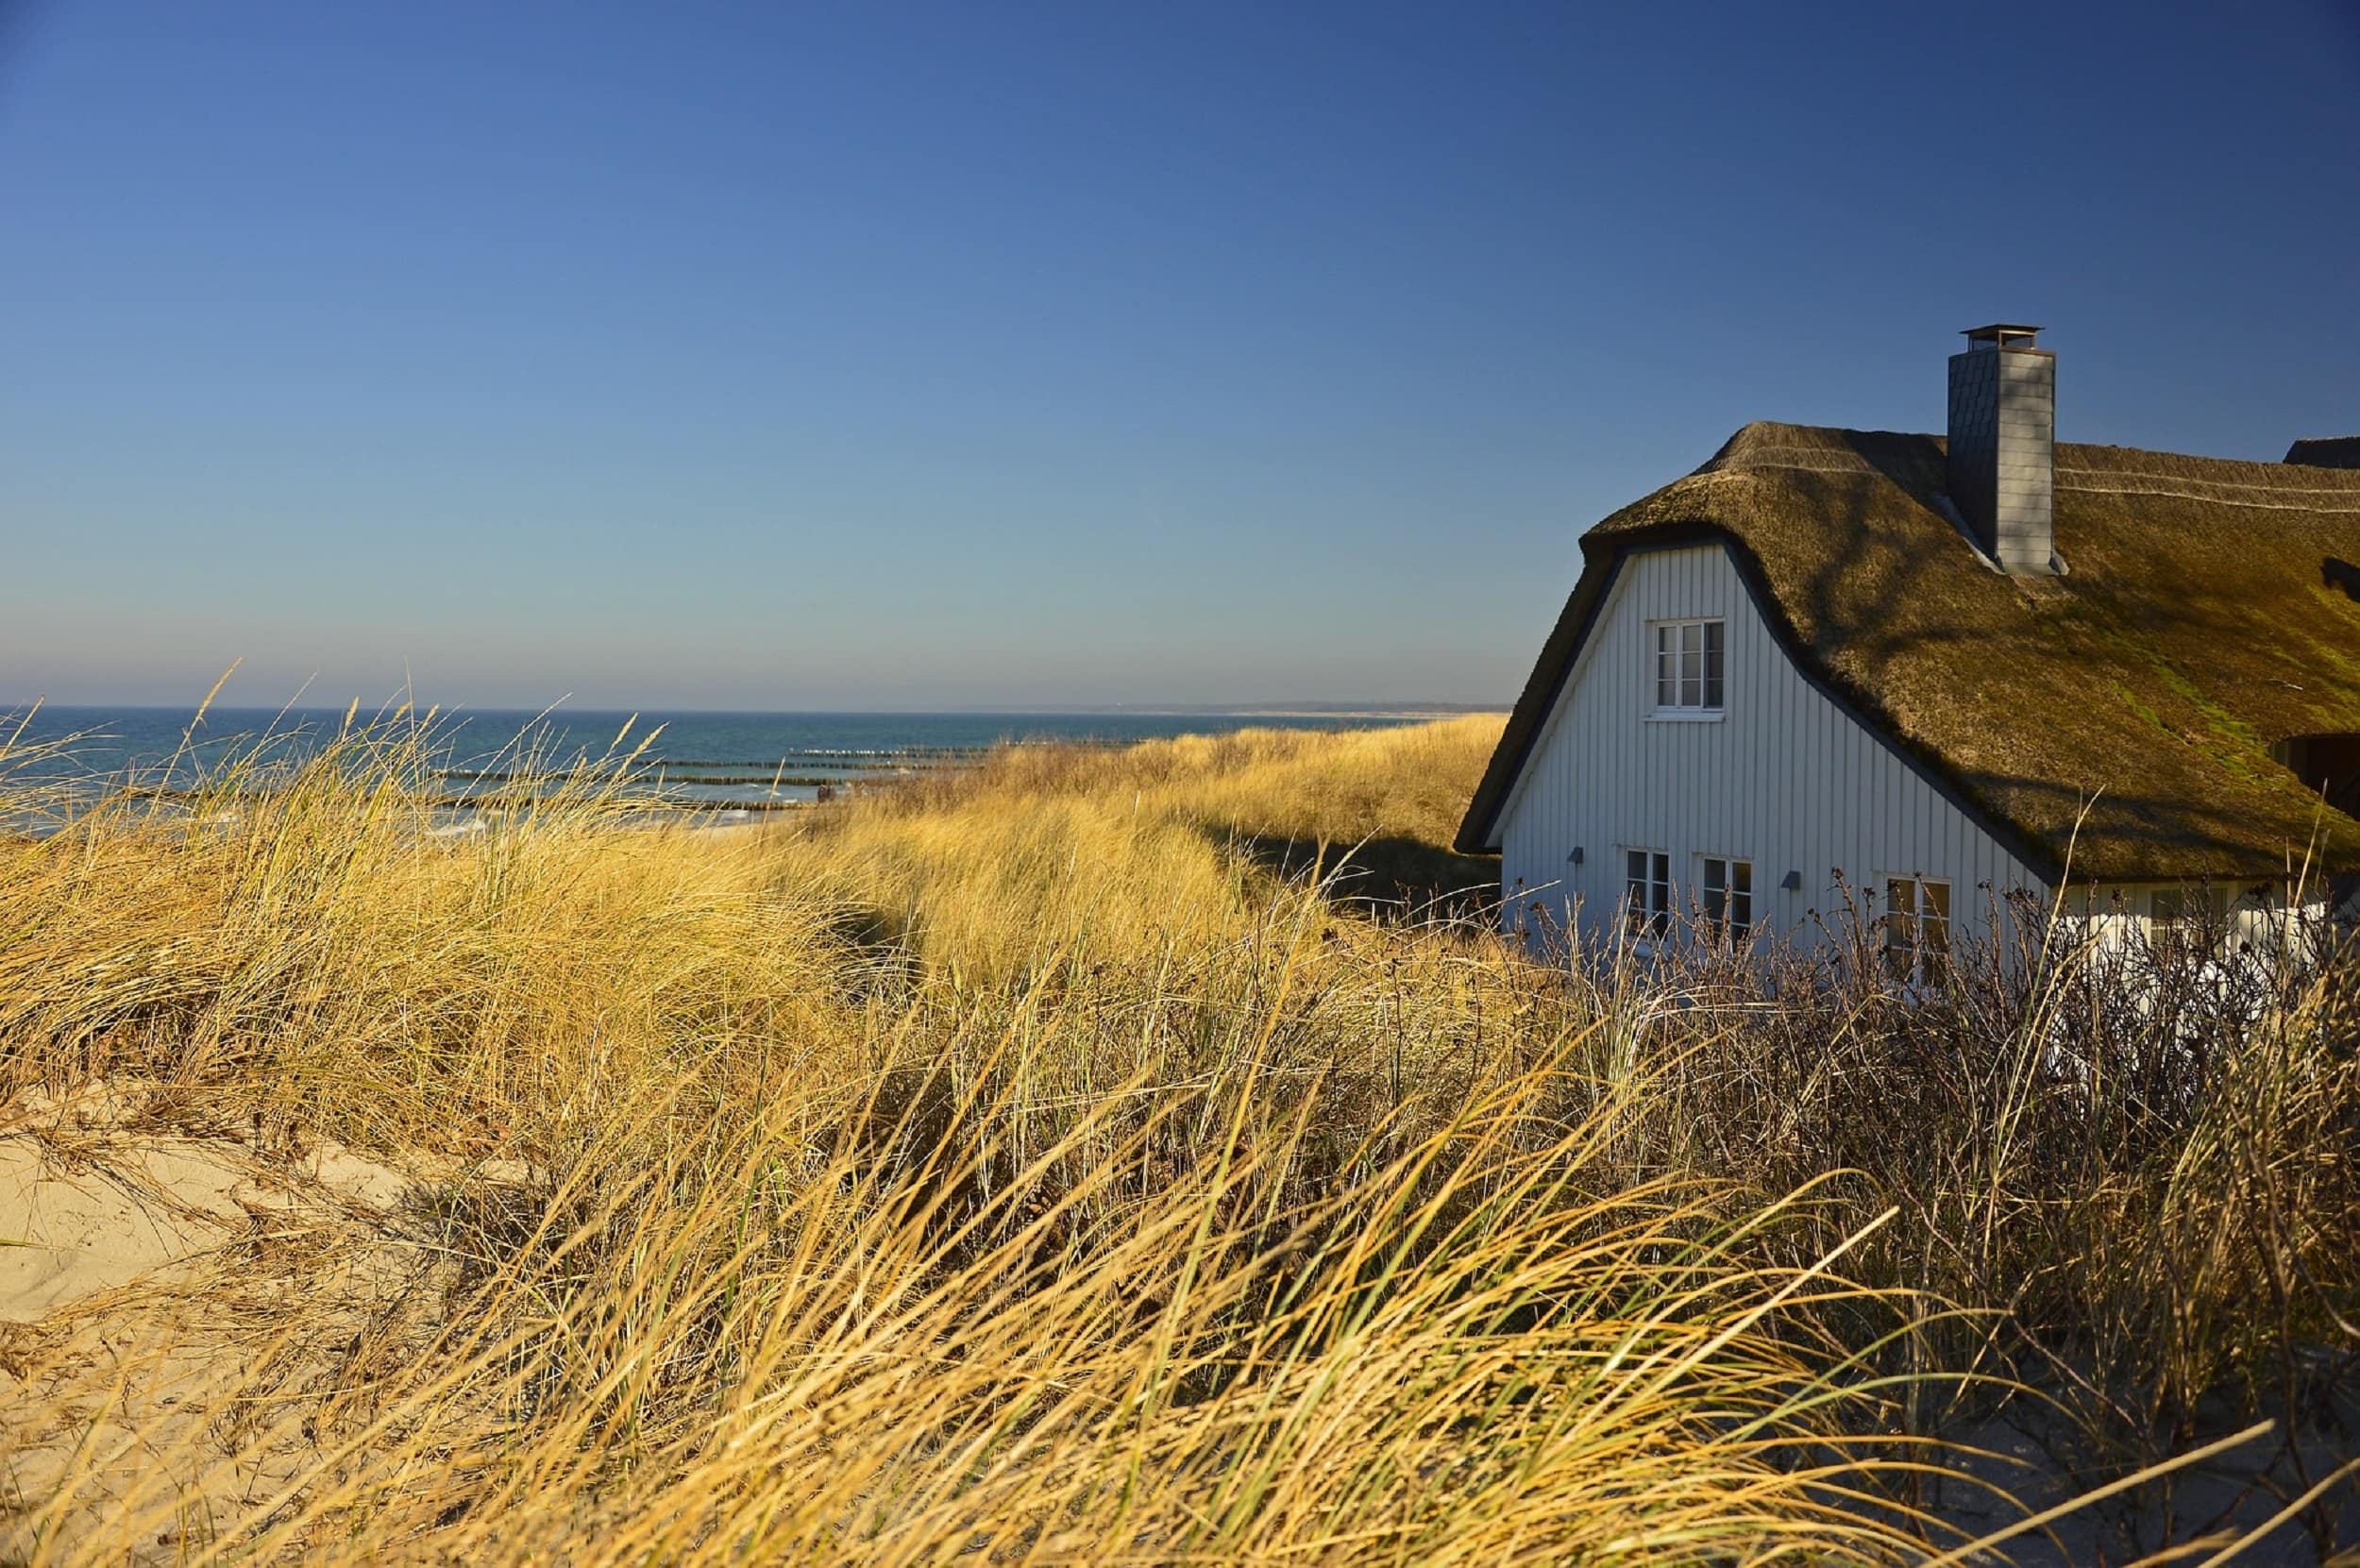 Ferienhaus an der Ostseeküste – endlich aufatmen